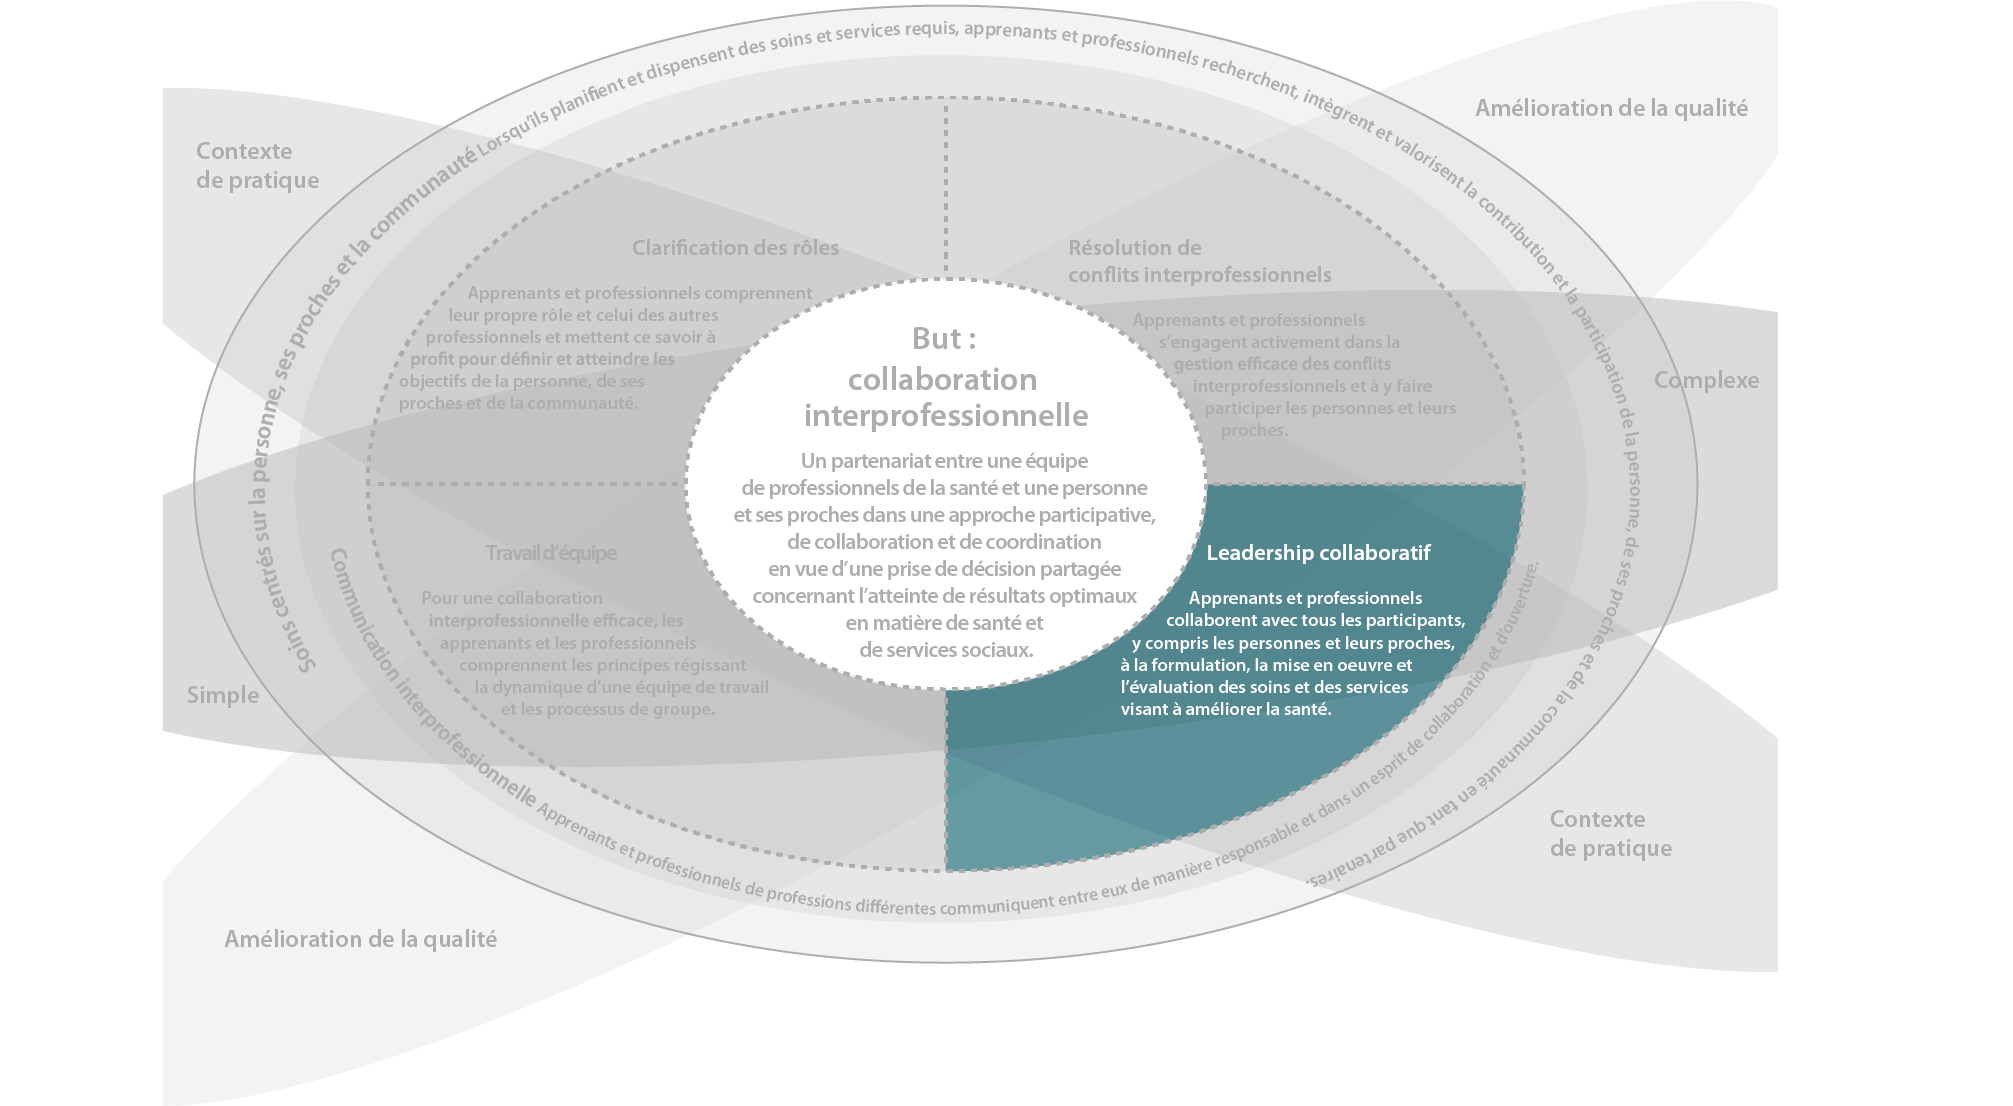 Schéma illustrant les six domaines de compétences interprofessionnelles